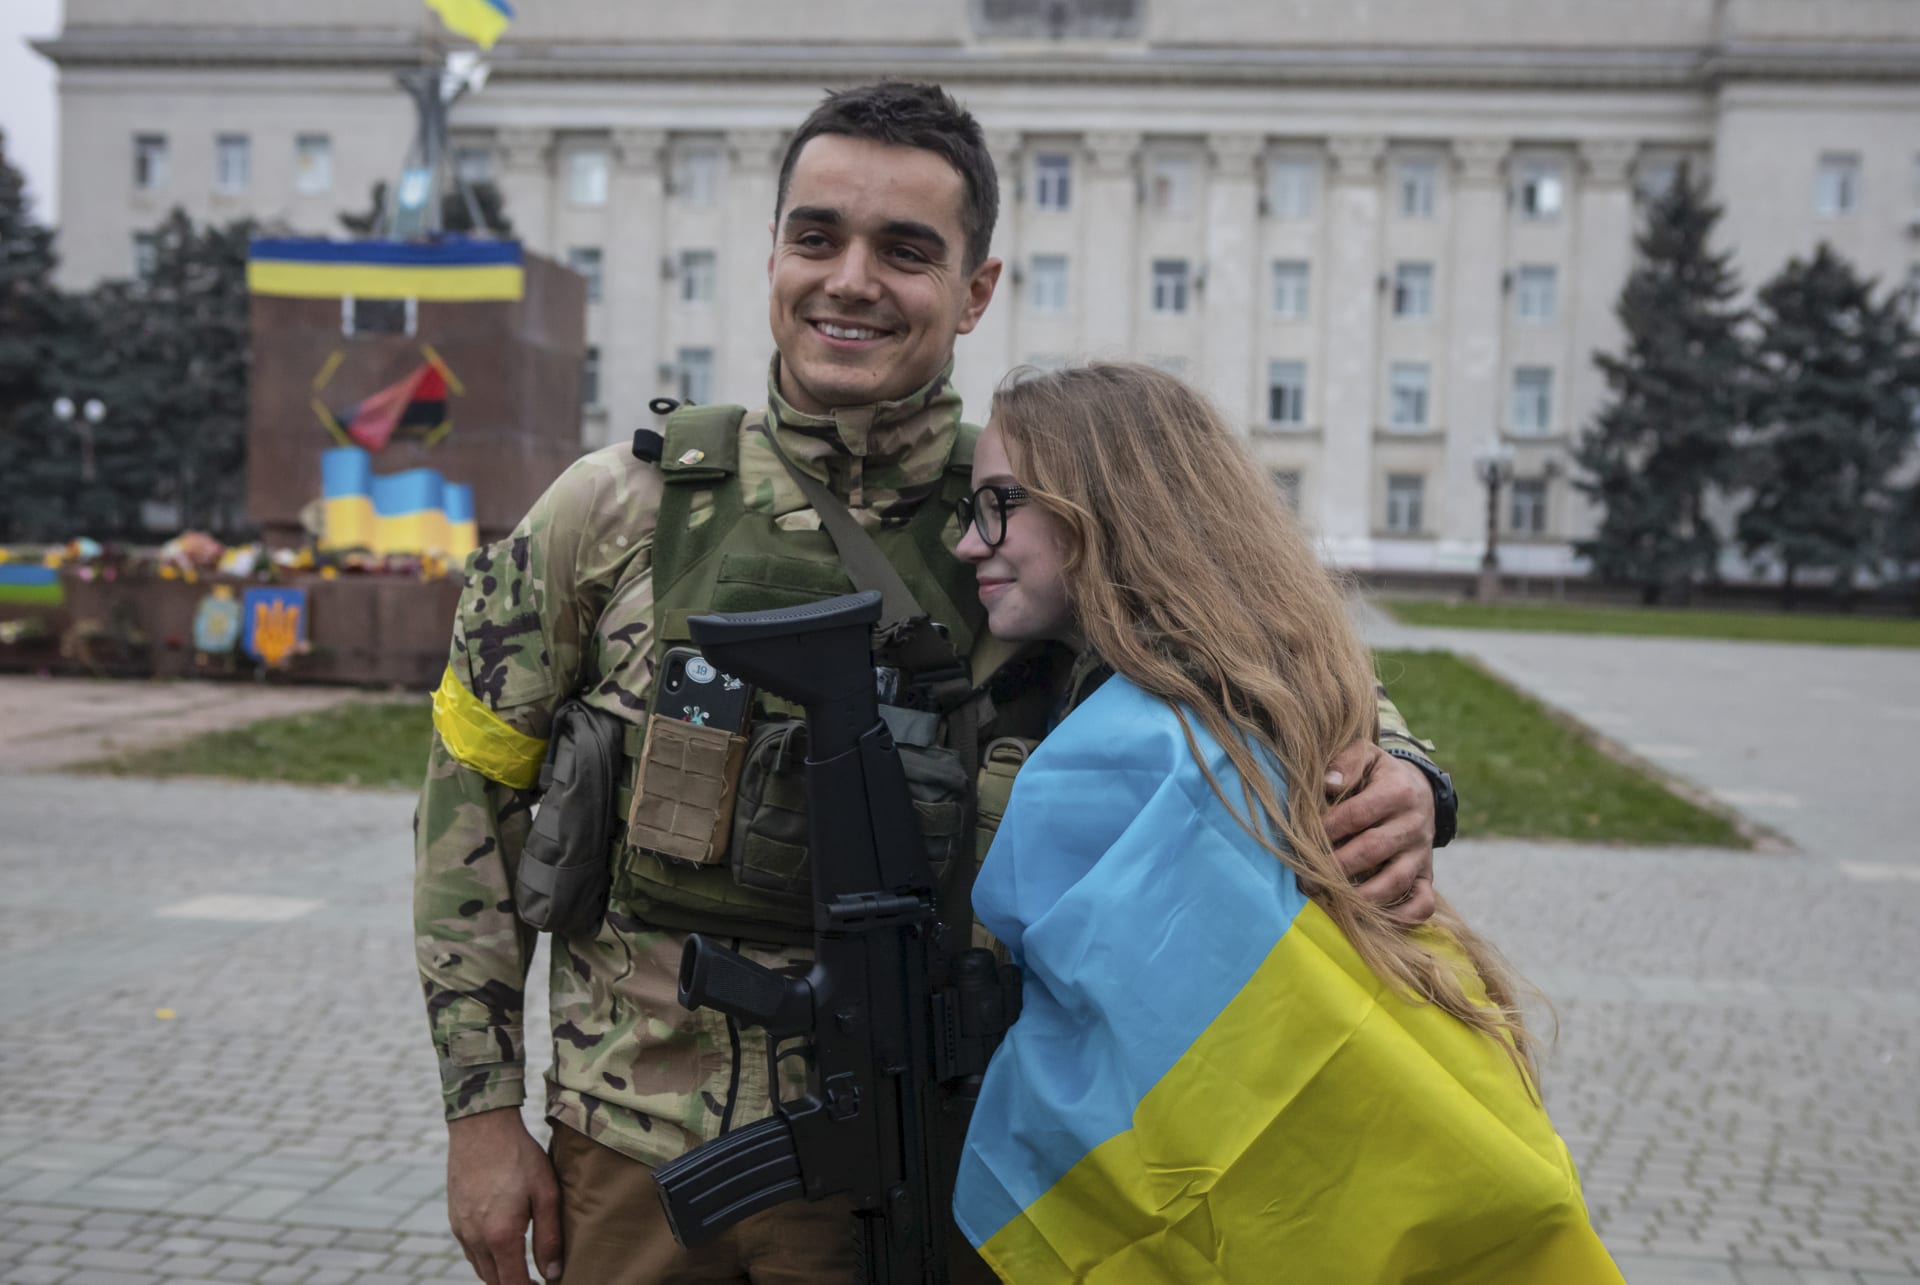 Rusové opustili Cherson a do města vstoupili ukrajinští vojáci. Ti se dočkali velmi vřelého přivítání od místních obyvatel.